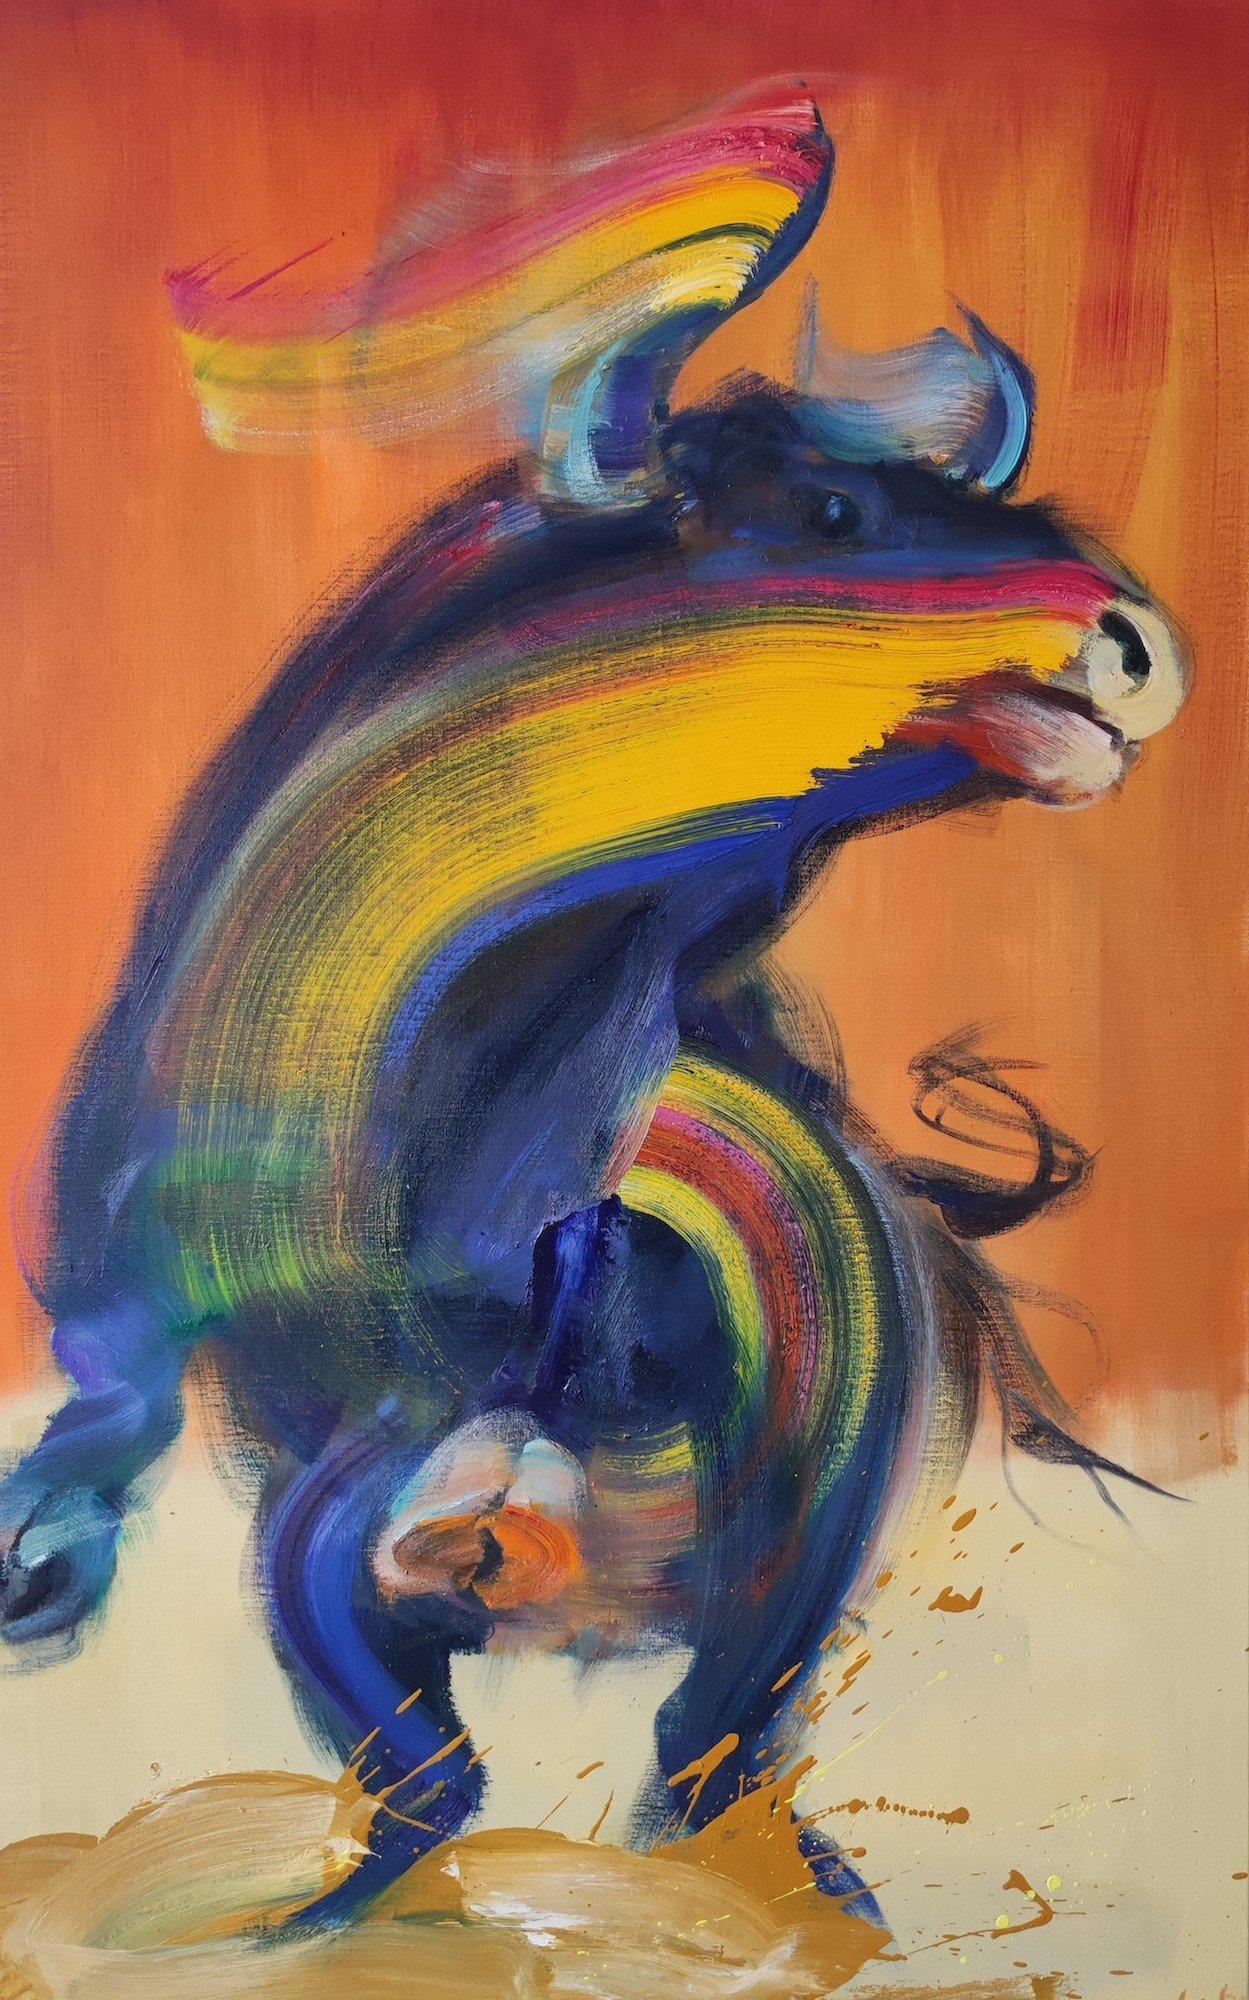 Murcielago (2023) des französischen zeitgenössischen Künstlers Christophe Dupety. Öl auf Leinwand, H 130 x B 81 cm // 51.2 in x 31.9 in.
Mit dieser Serie setzt sich der Künstler mit dem Thema Stierkampf auseinander. Doch anstatt die Konfrontation